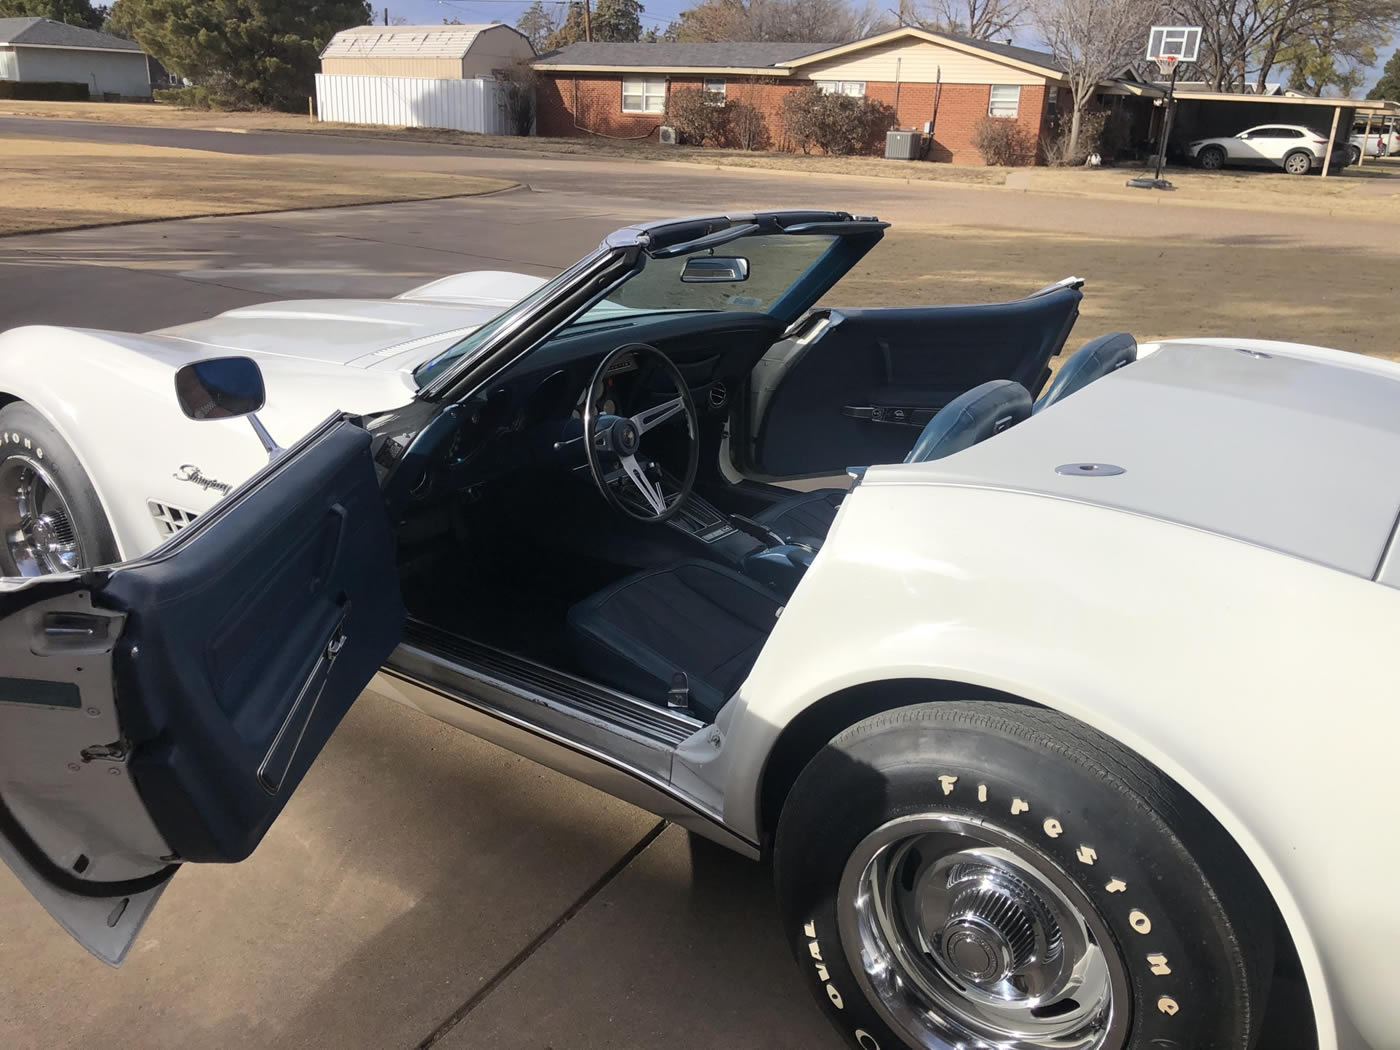 1972 Corvette Convertible in Classic White